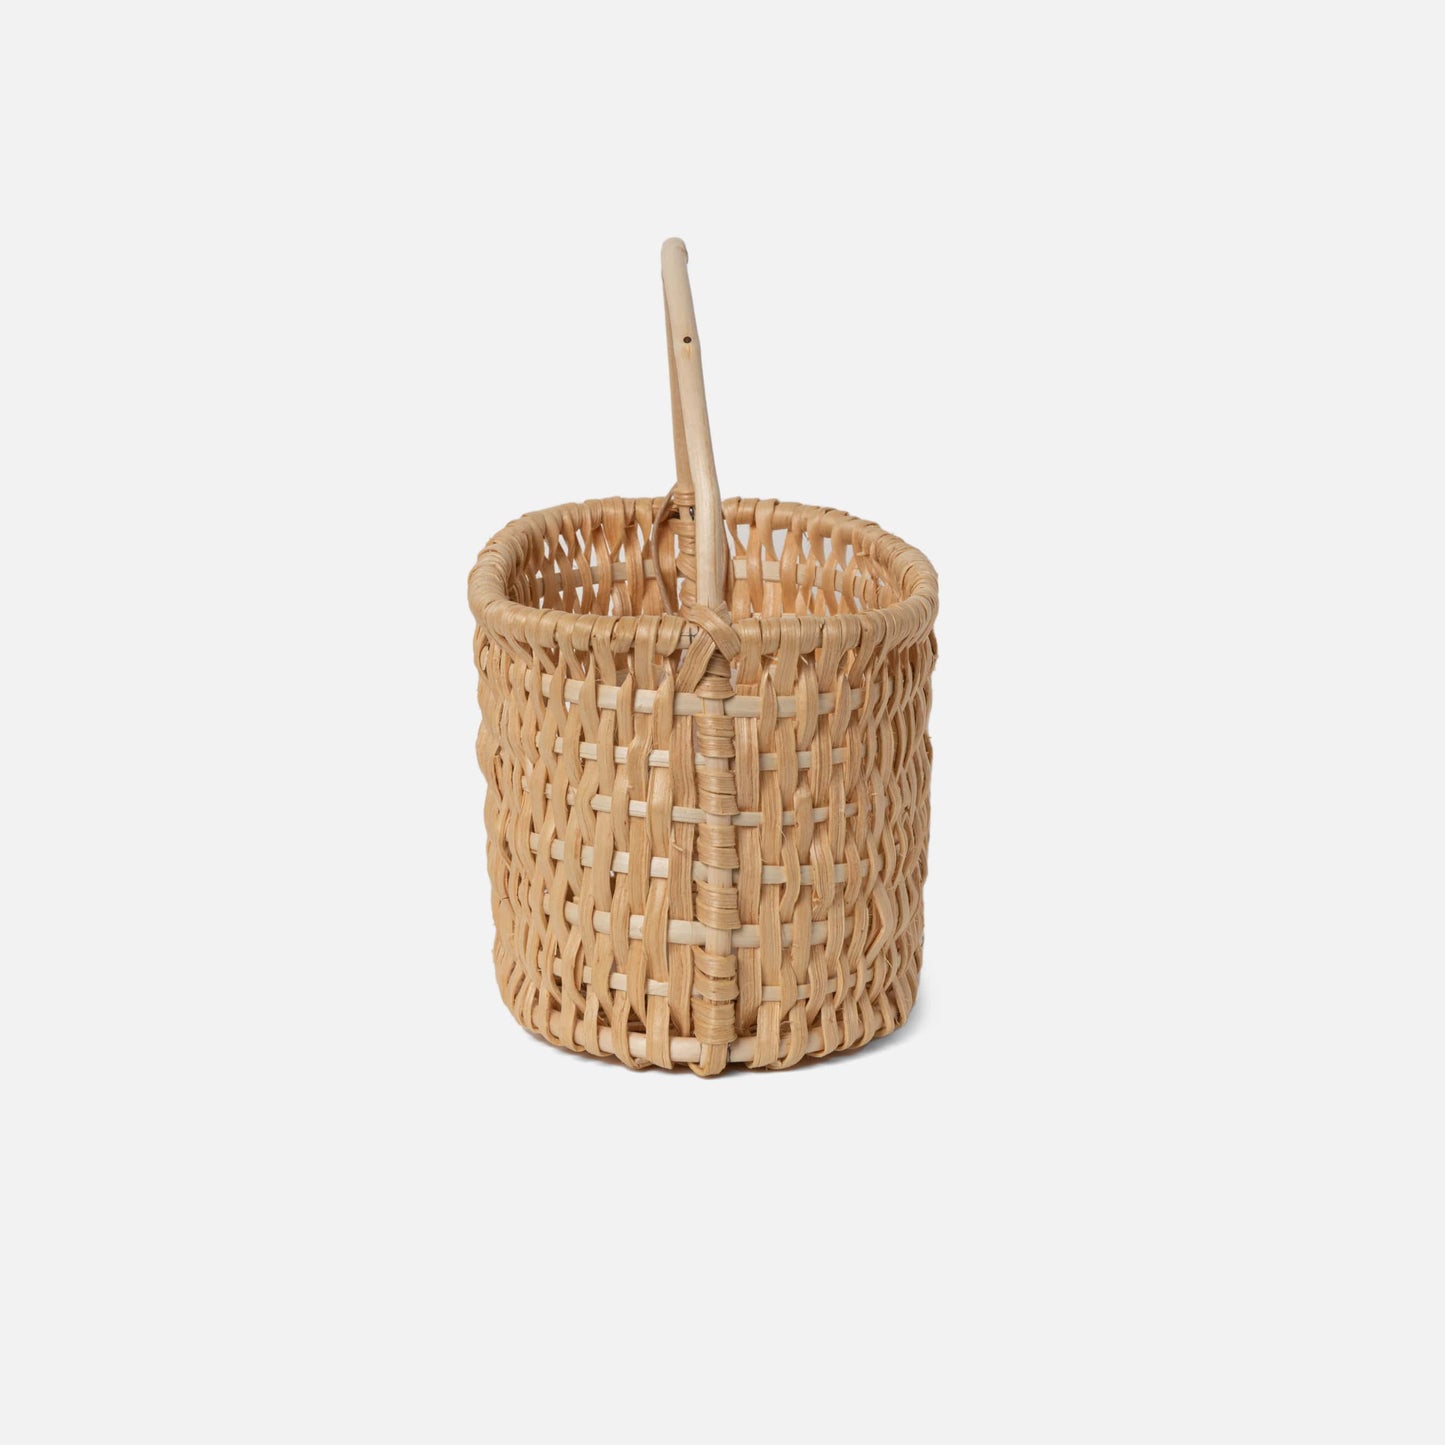 Basket 10 | Pine root